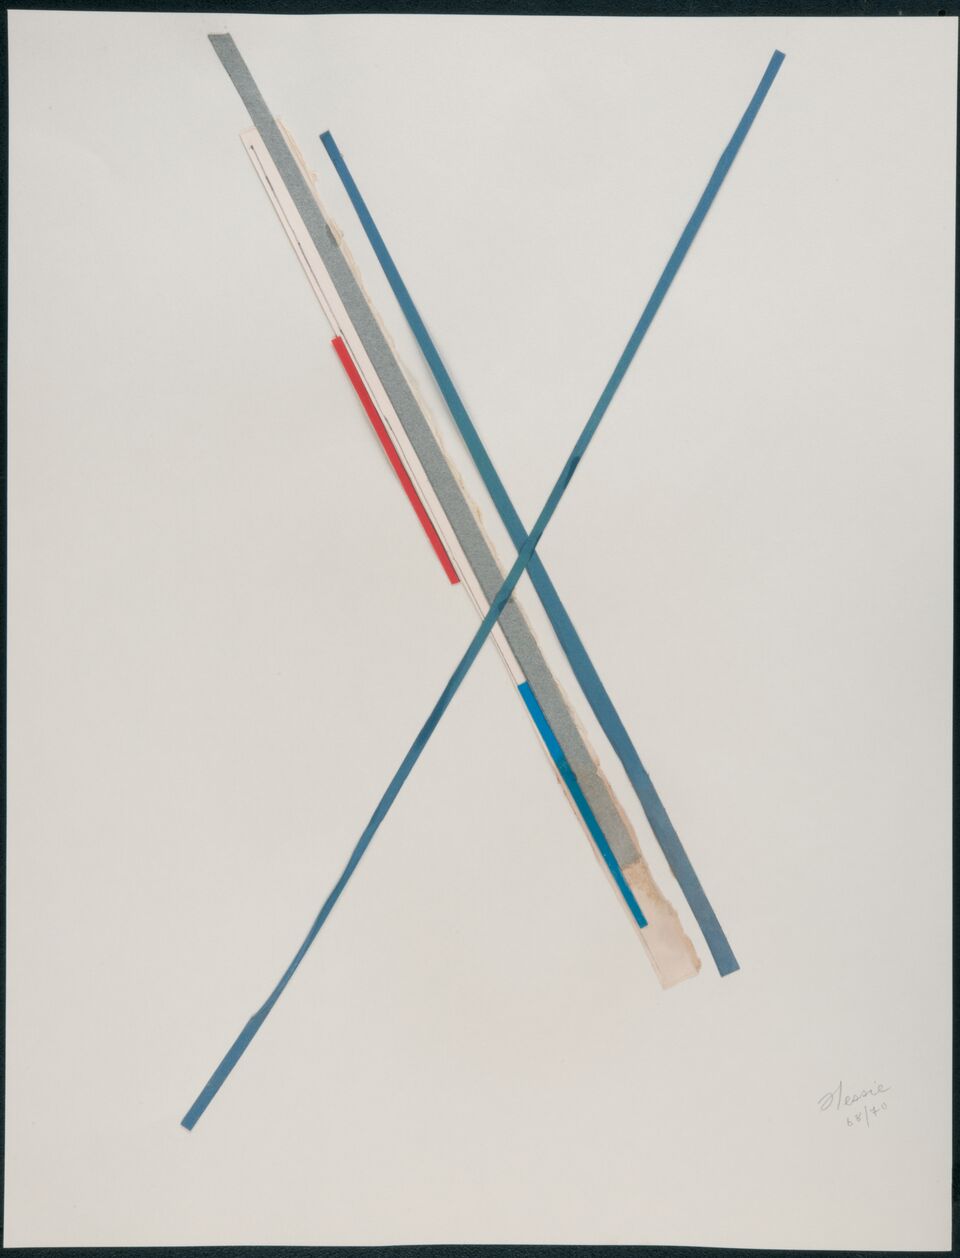 Hessie. Sin título, 1968-1970. Cortesía de la Galerie Arnold Lefebvre